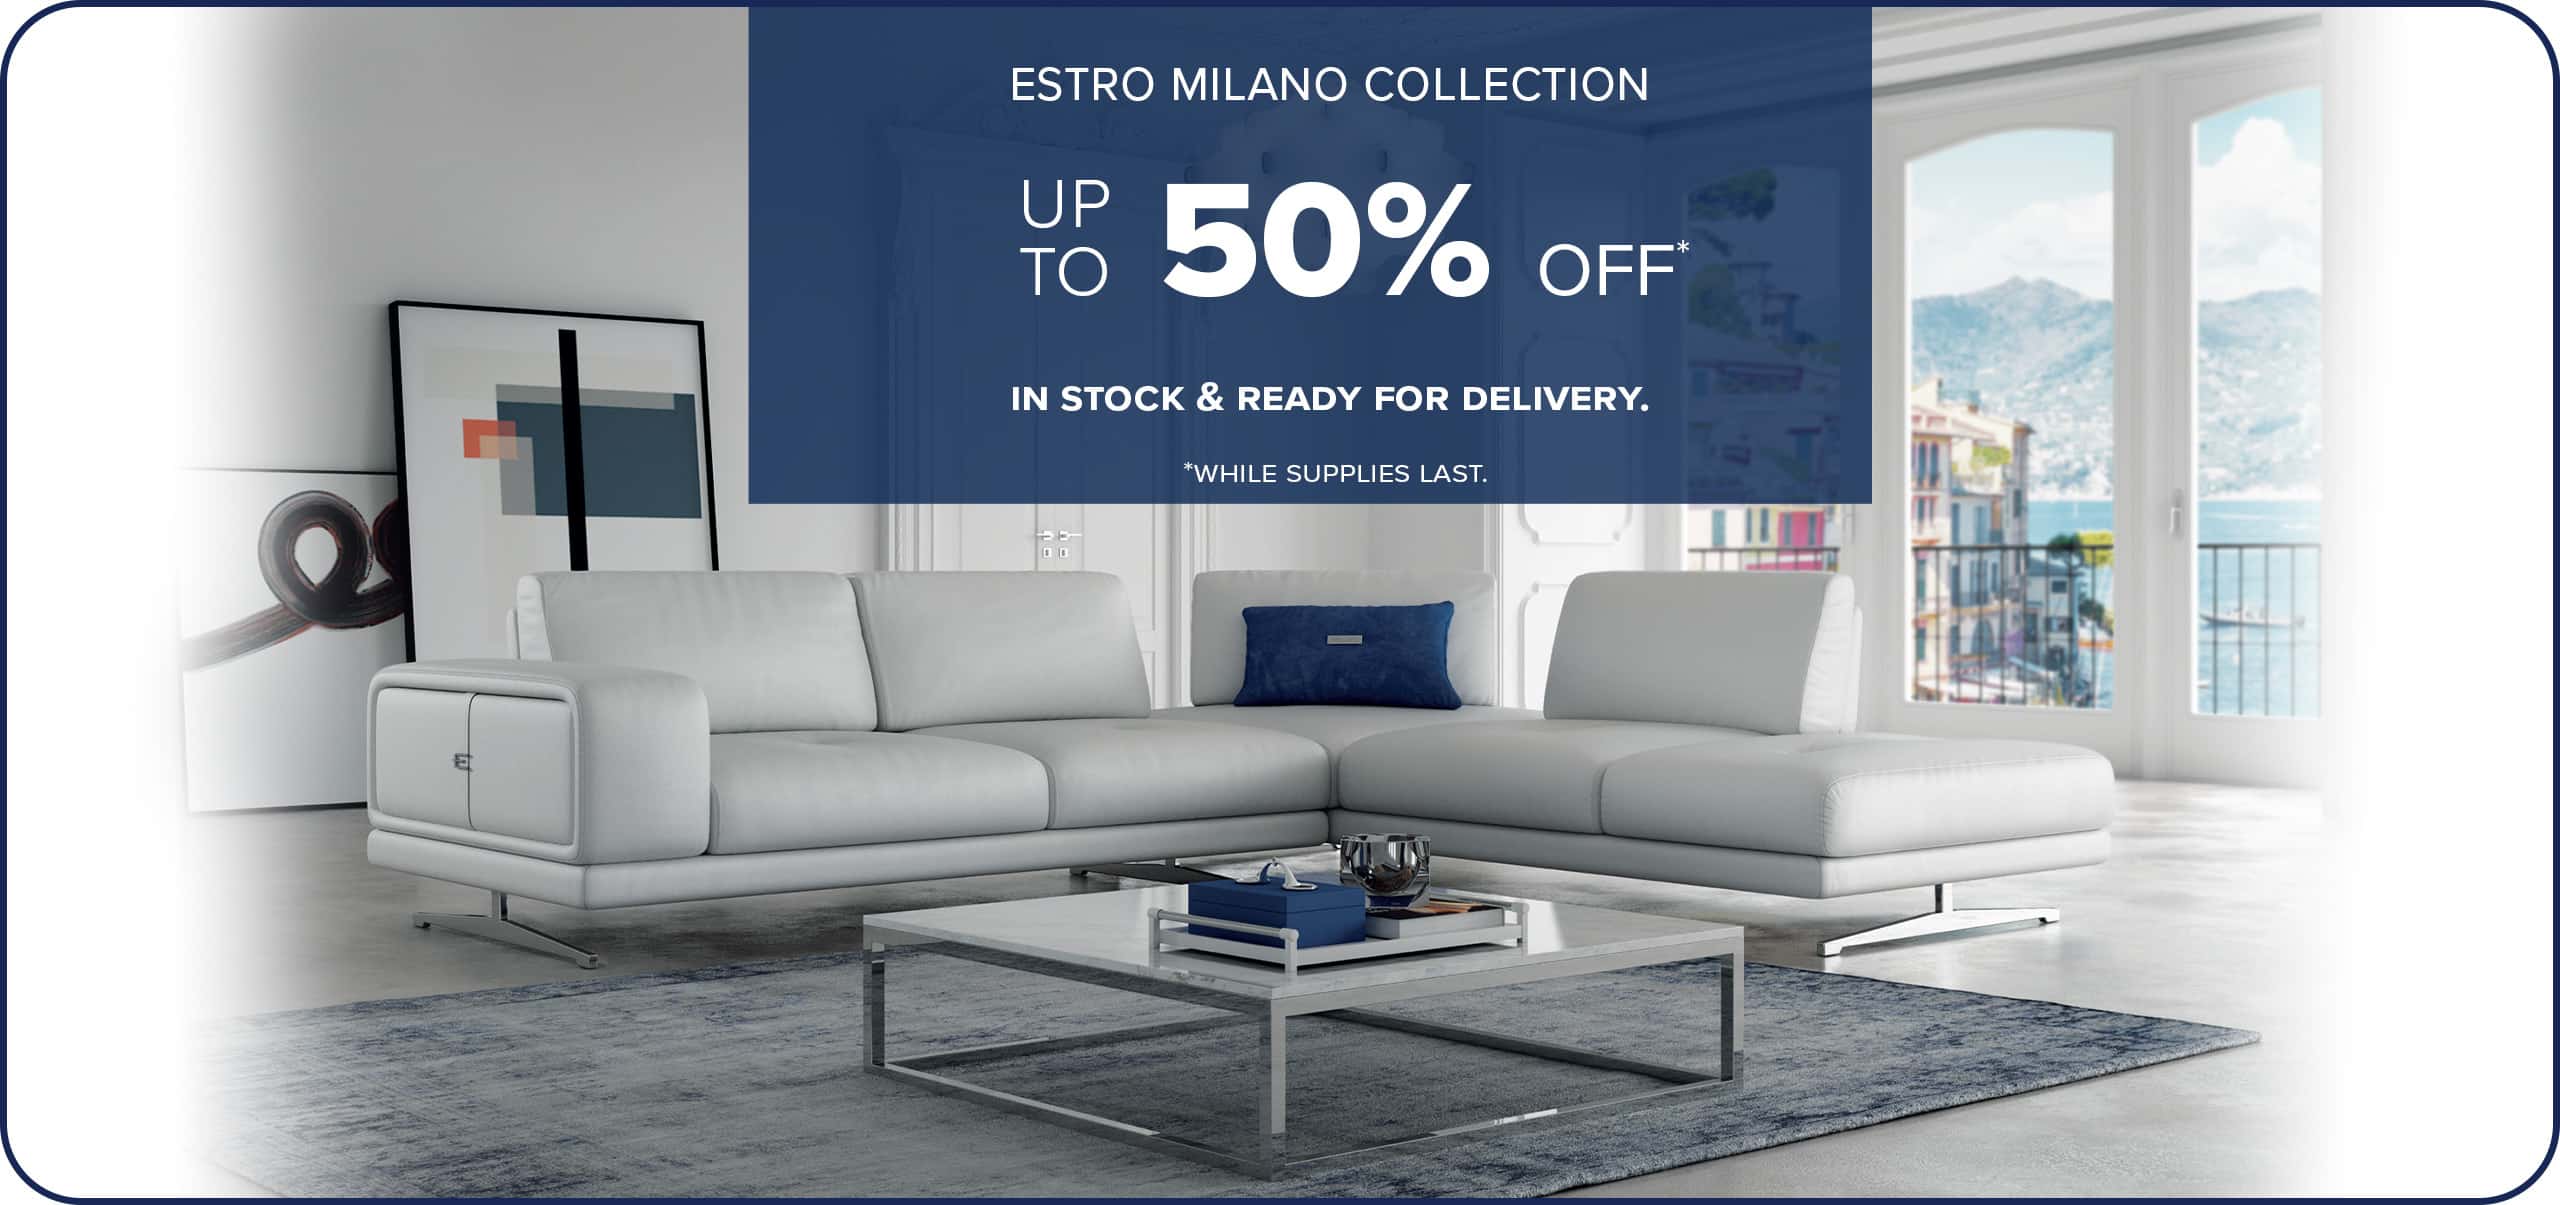 Estro Milano Floor Model Sale up to 50% off